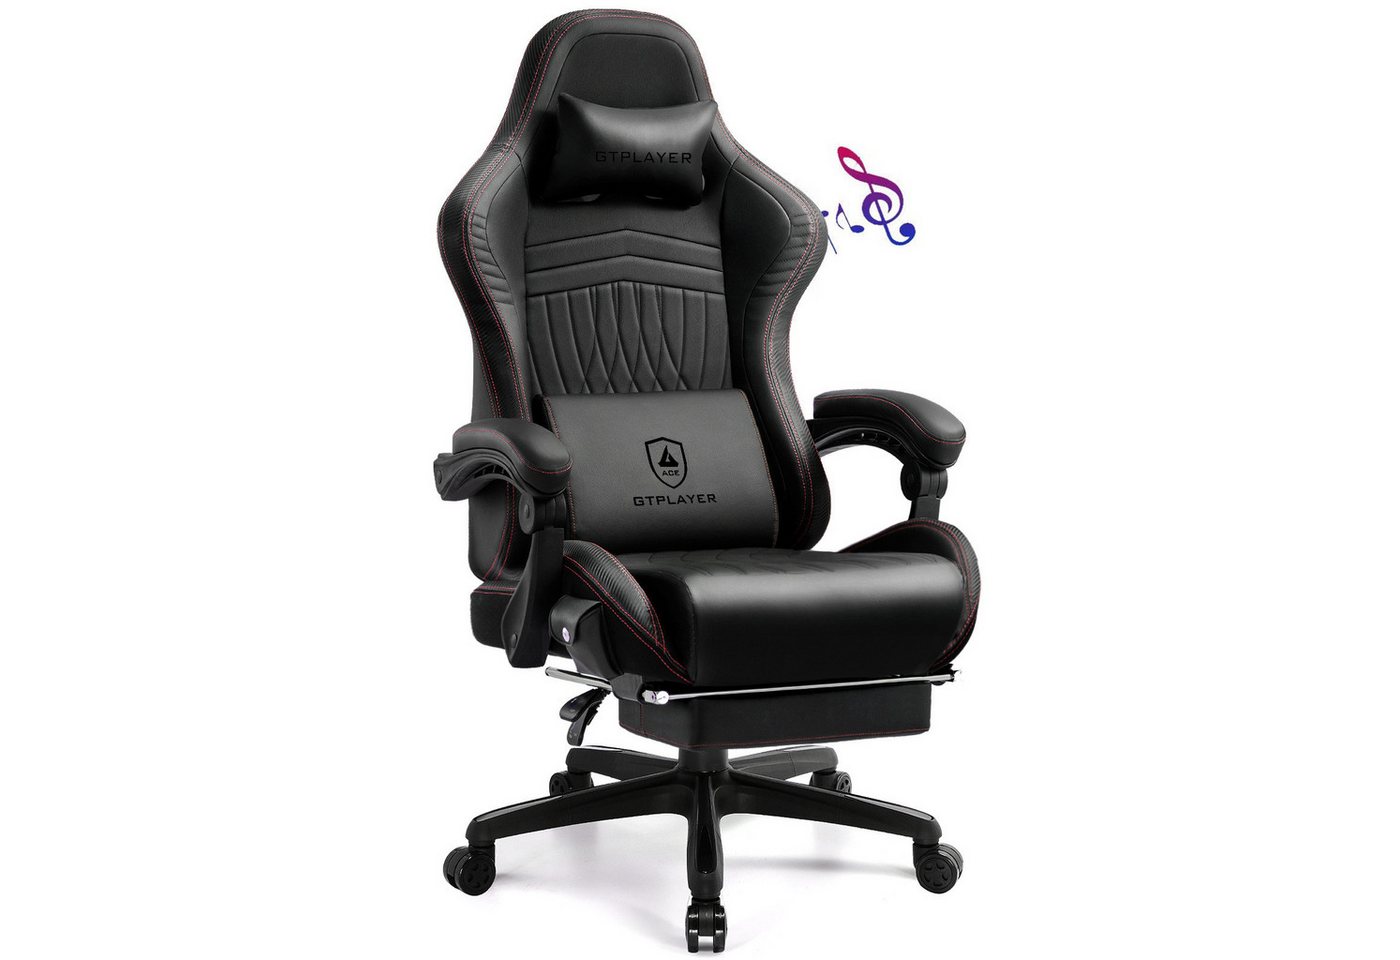 GTPLAYER Gaming-Stuhl ergonomischer Bürostuhl mit HIFI Stereo Lautsprecher, Mit Fußstütze und Verbindungsrmlehne höhenverstellbar Kopfstütze von GTPLAYER